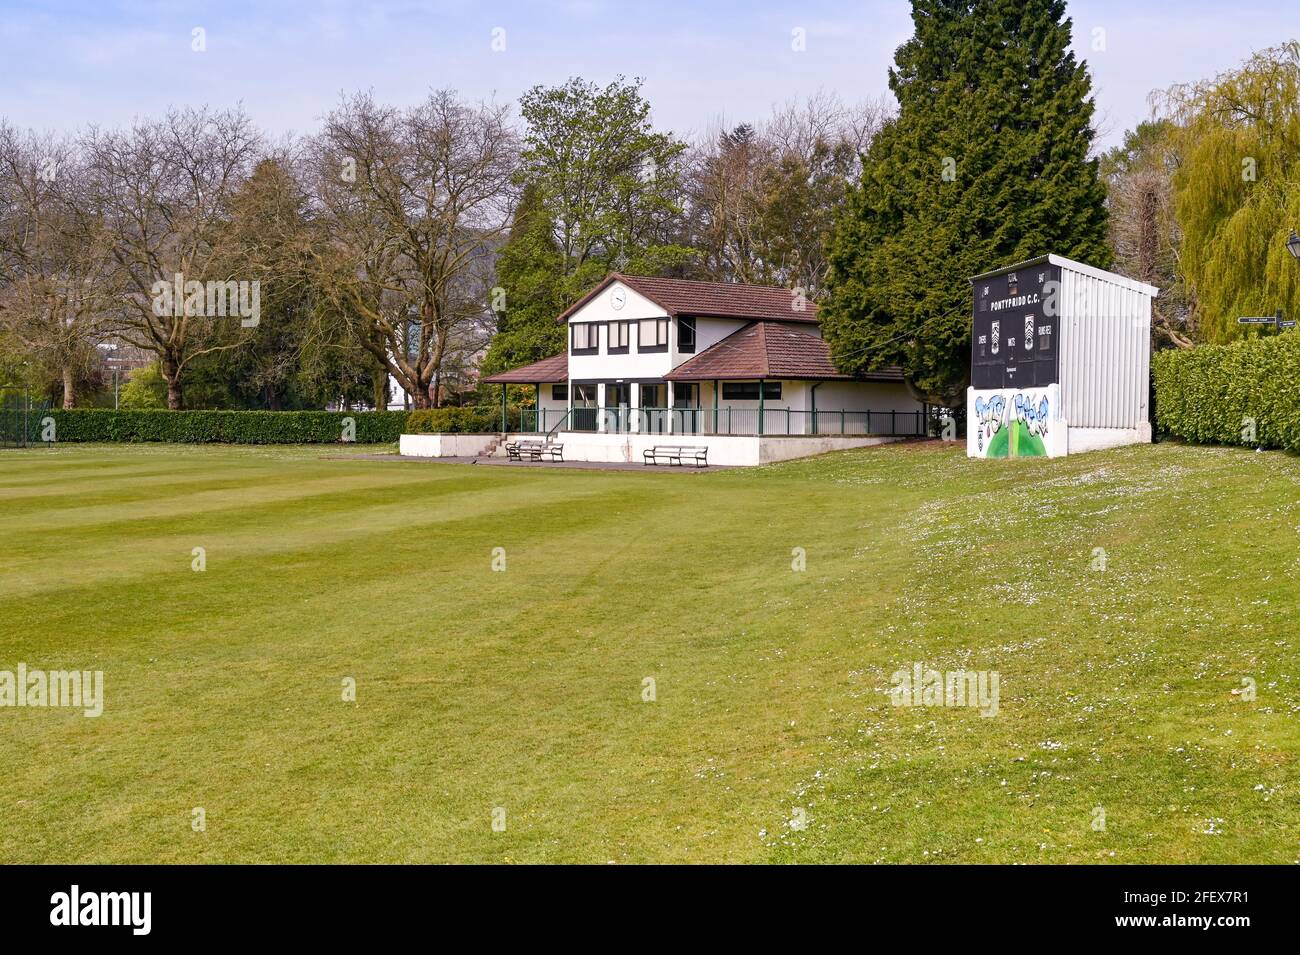 Pontypridd, pays de galles - avril 2021 : Pavillon et tableau de bord au terrain de cricket du parc Ynysangharad à Pontypridd. Banque D'Images